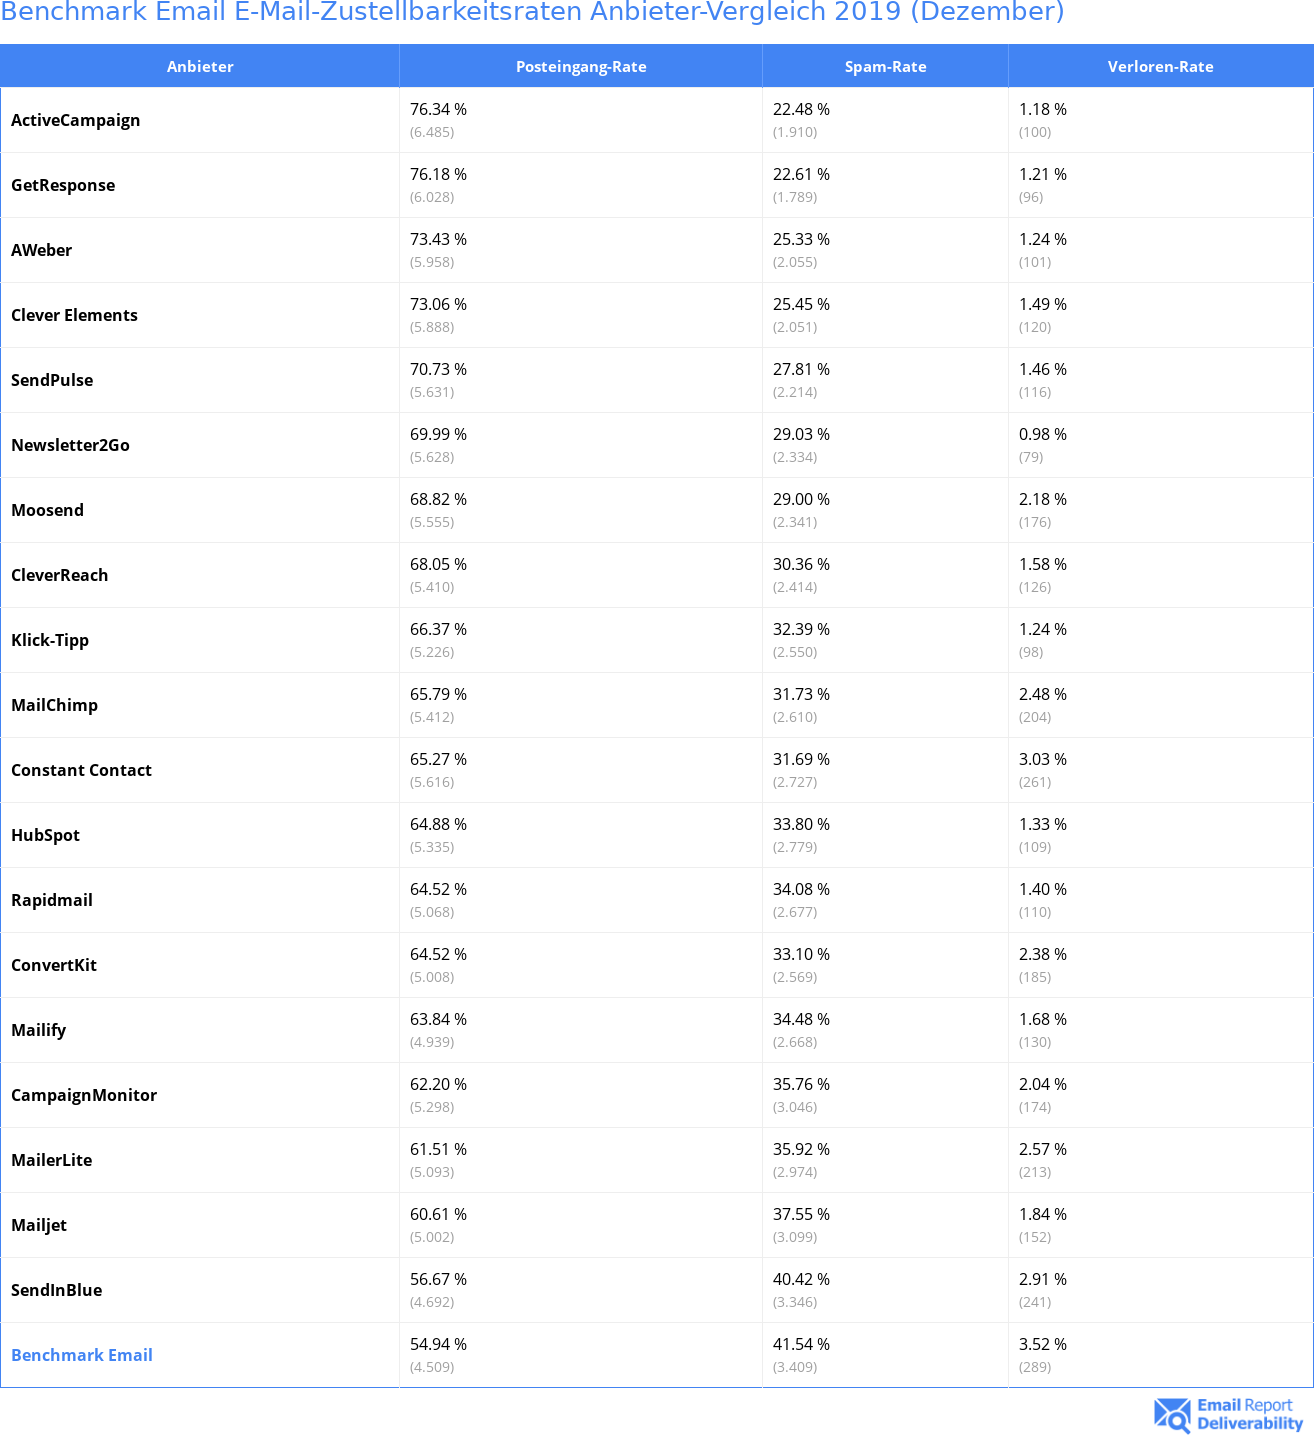 Benchmark Email E-Mail-Zustellbarkeitsraten Anbieter-Vergleich 2019 (Dezember)